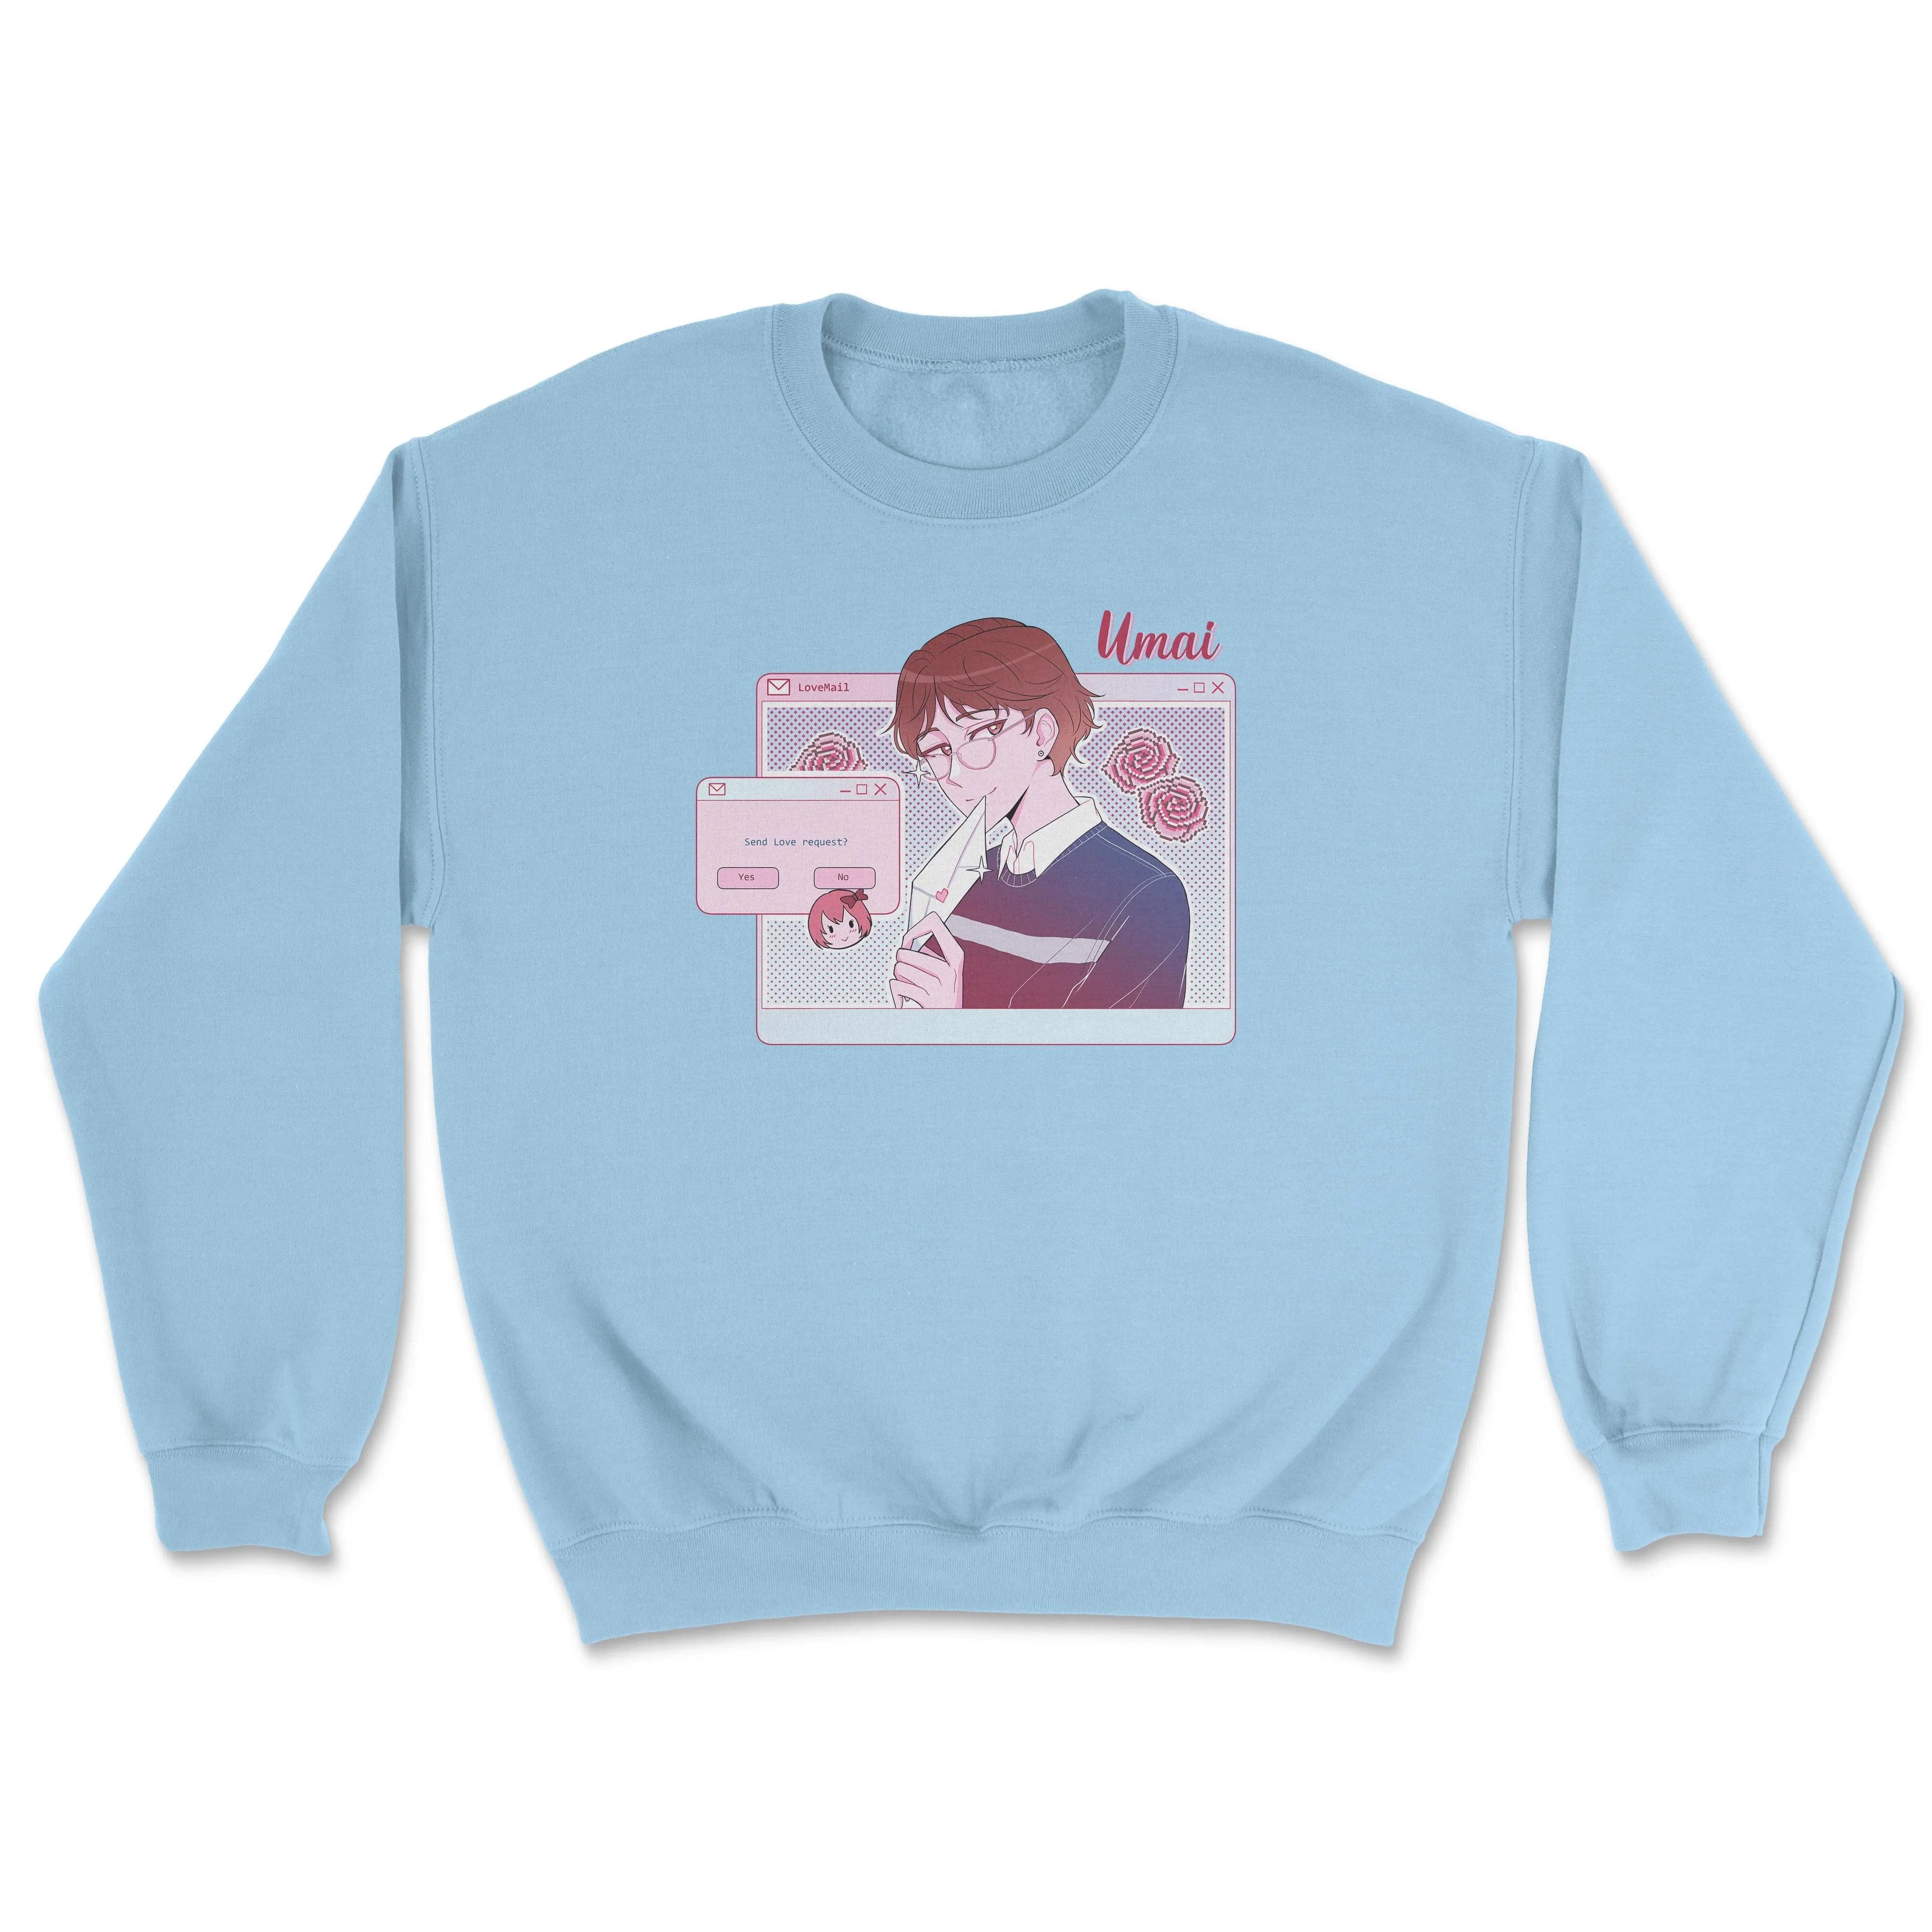 February 2021 Exclusive (Boy) • Crewneck Sweatshirt